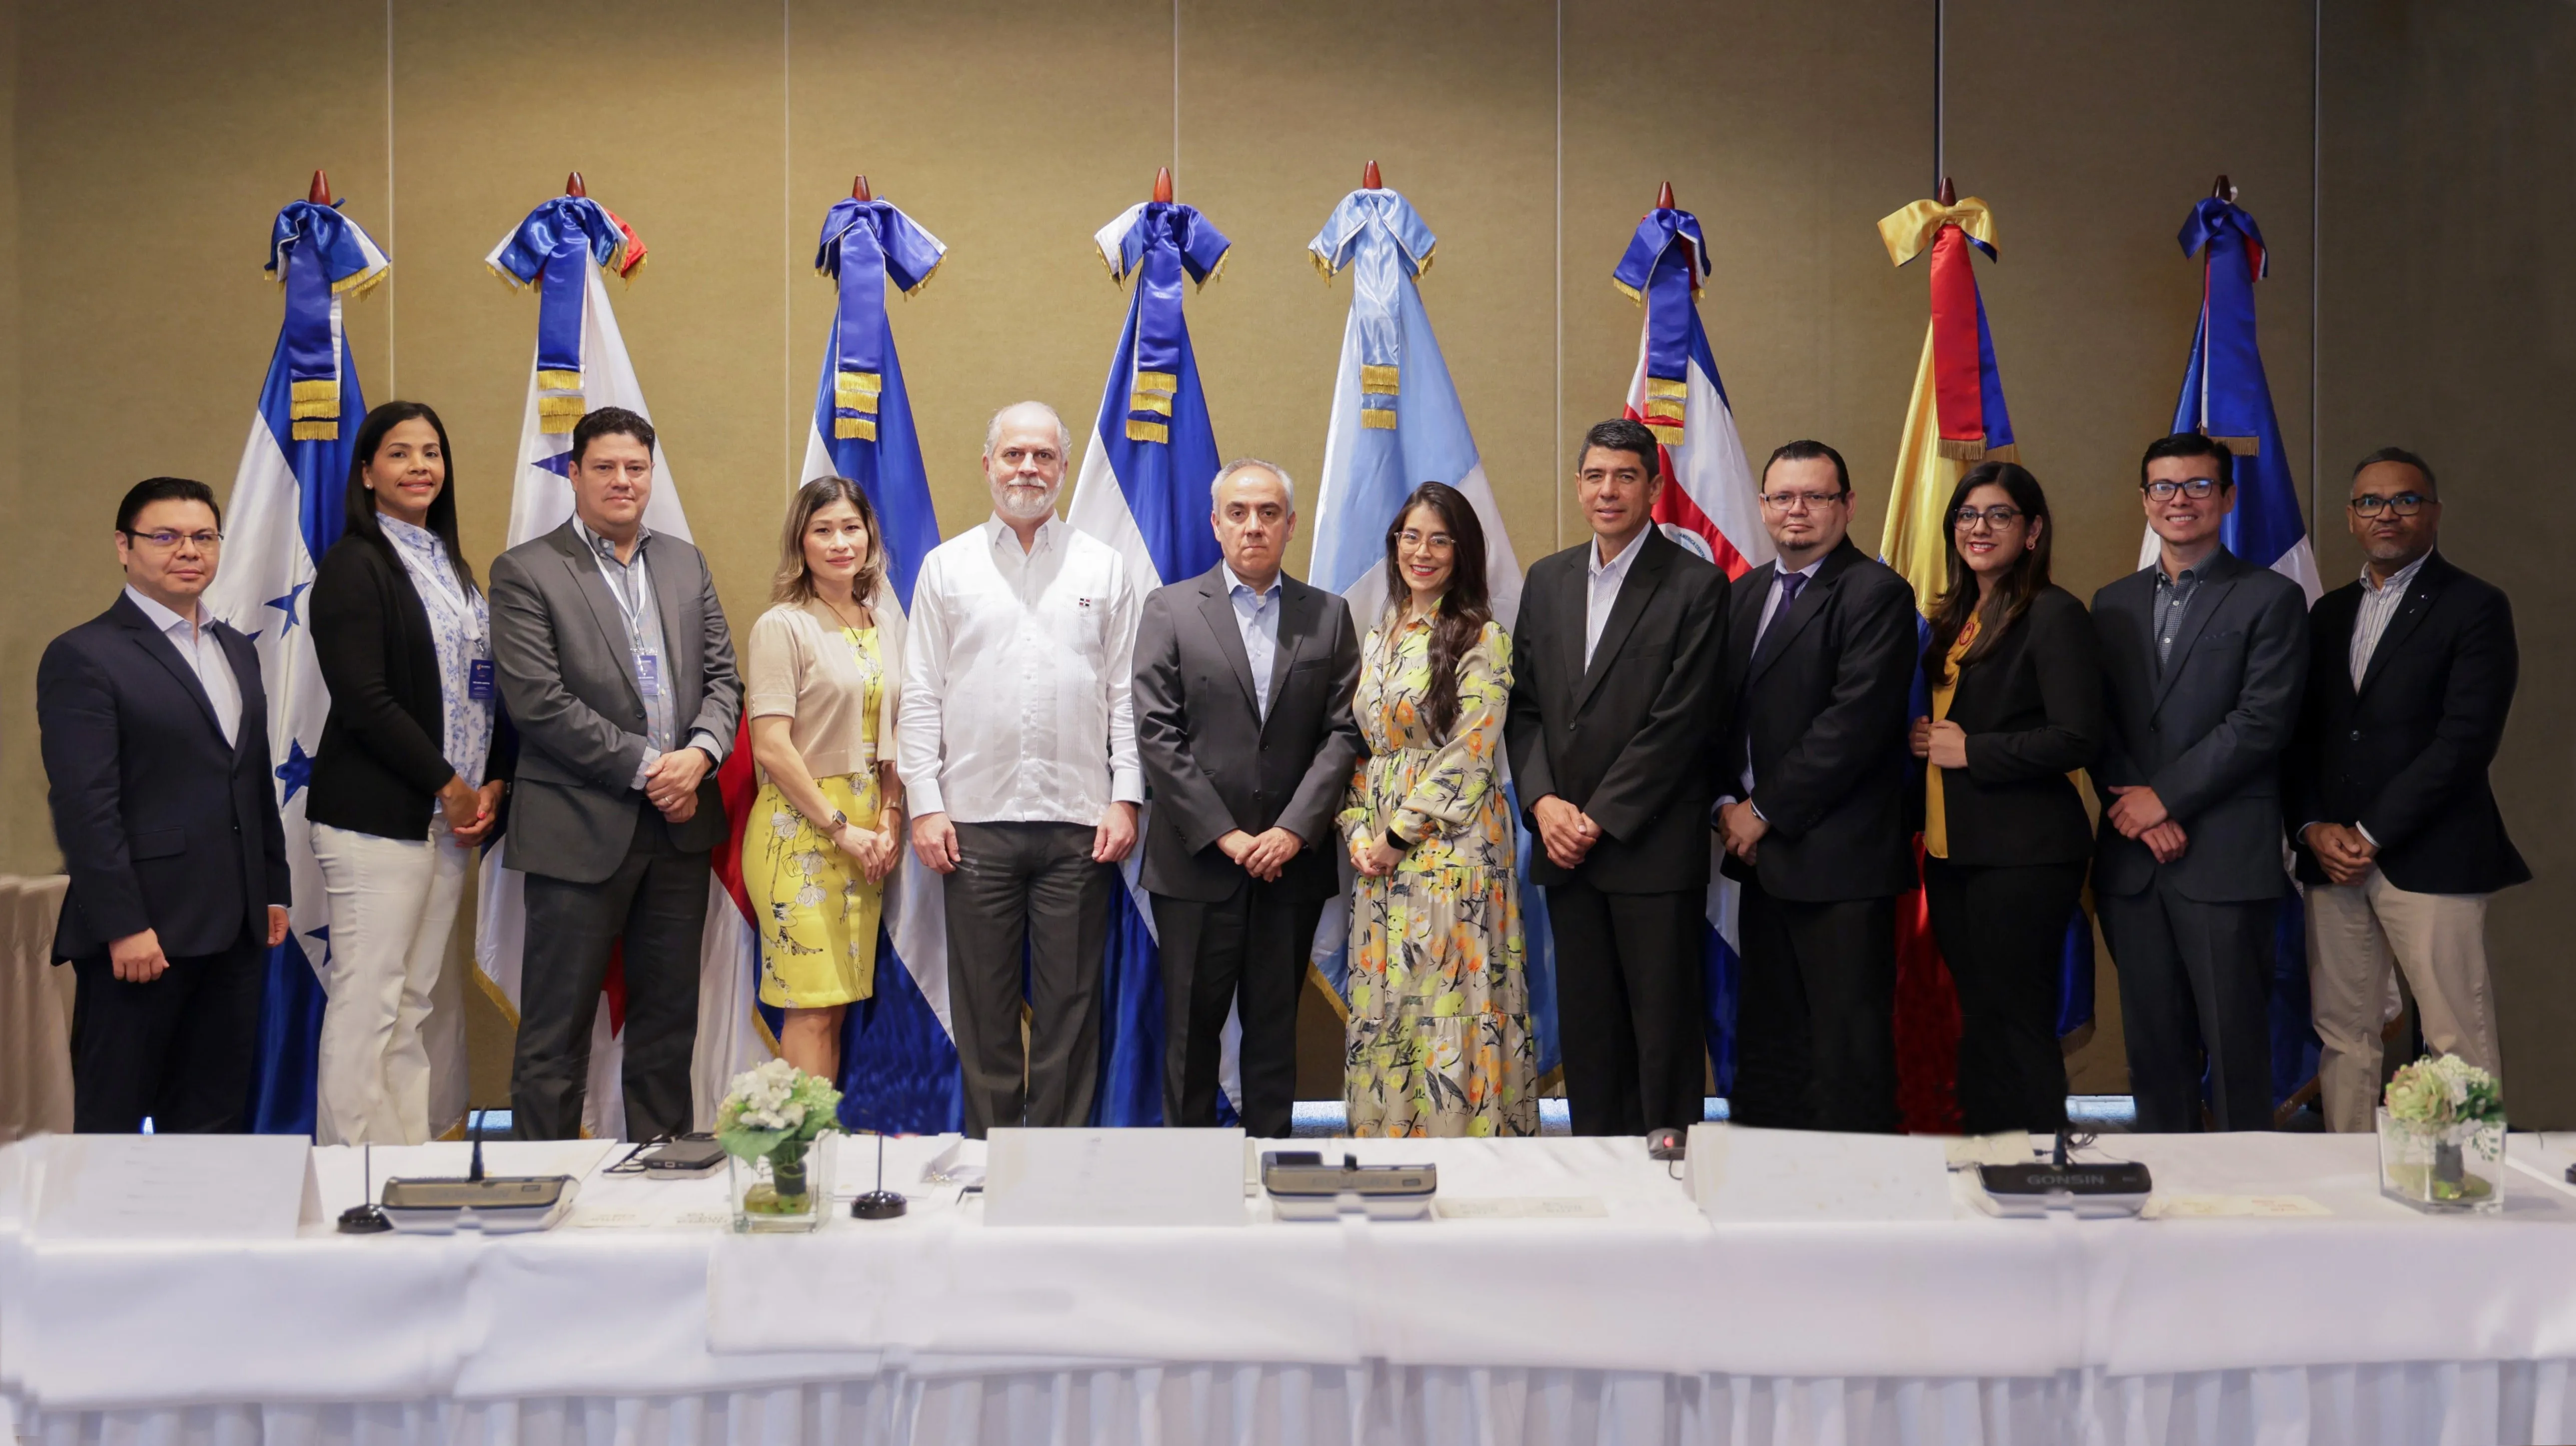 Superintendencia de Bancos organiza reunión del Comité de Estándares del Consejo Centroamericano